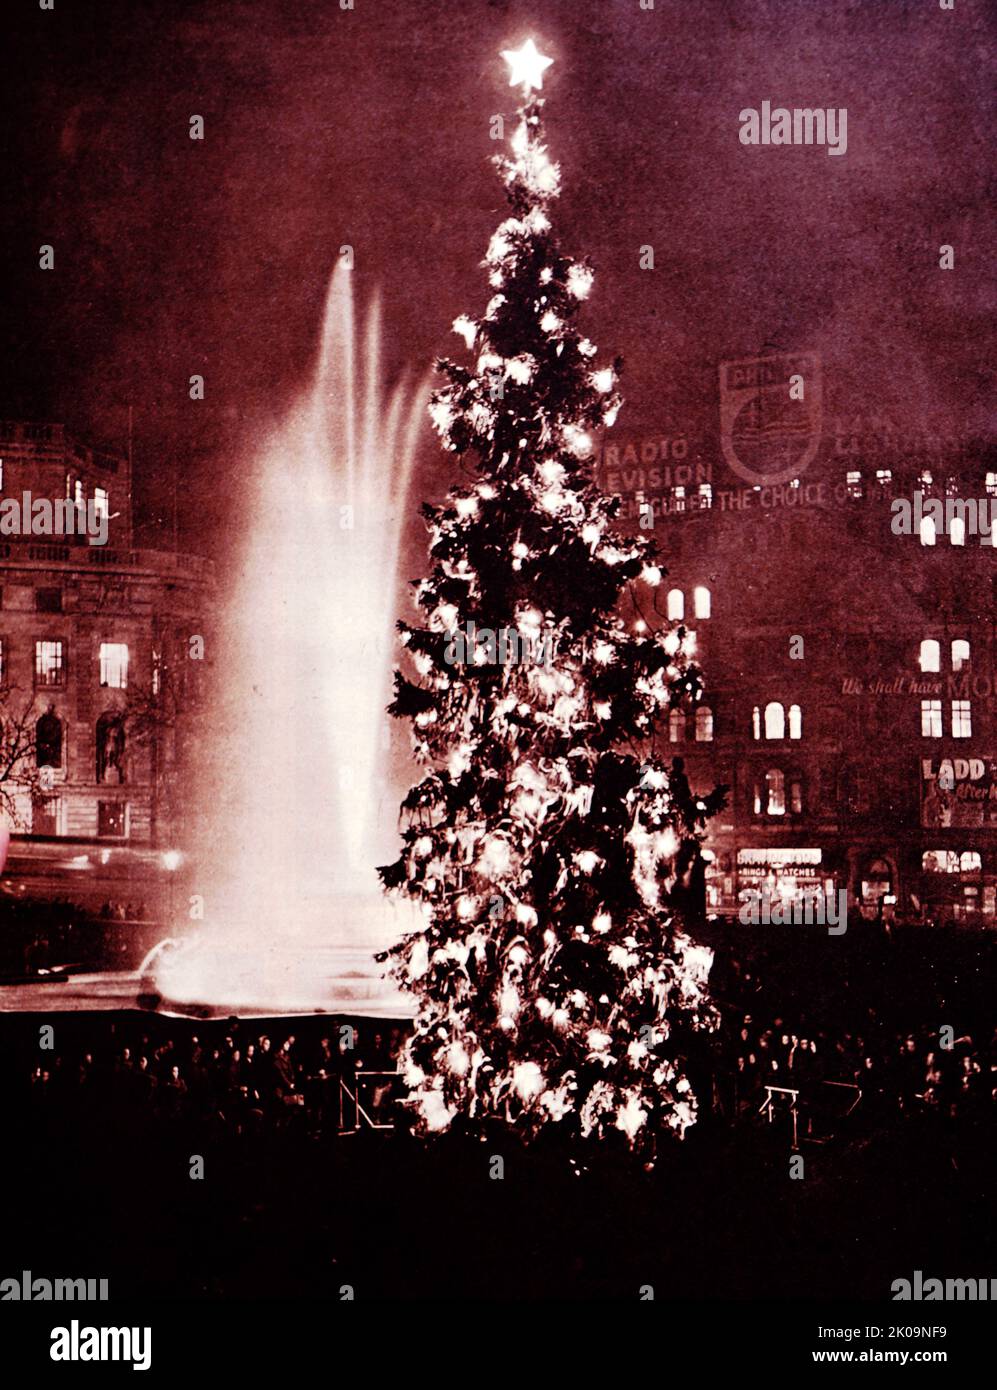 El gesto de buena voluntad de Noruega hacia Londres: El gigantesco árbol de Navidad en Trafalgar Square, Londres. Foto de stock